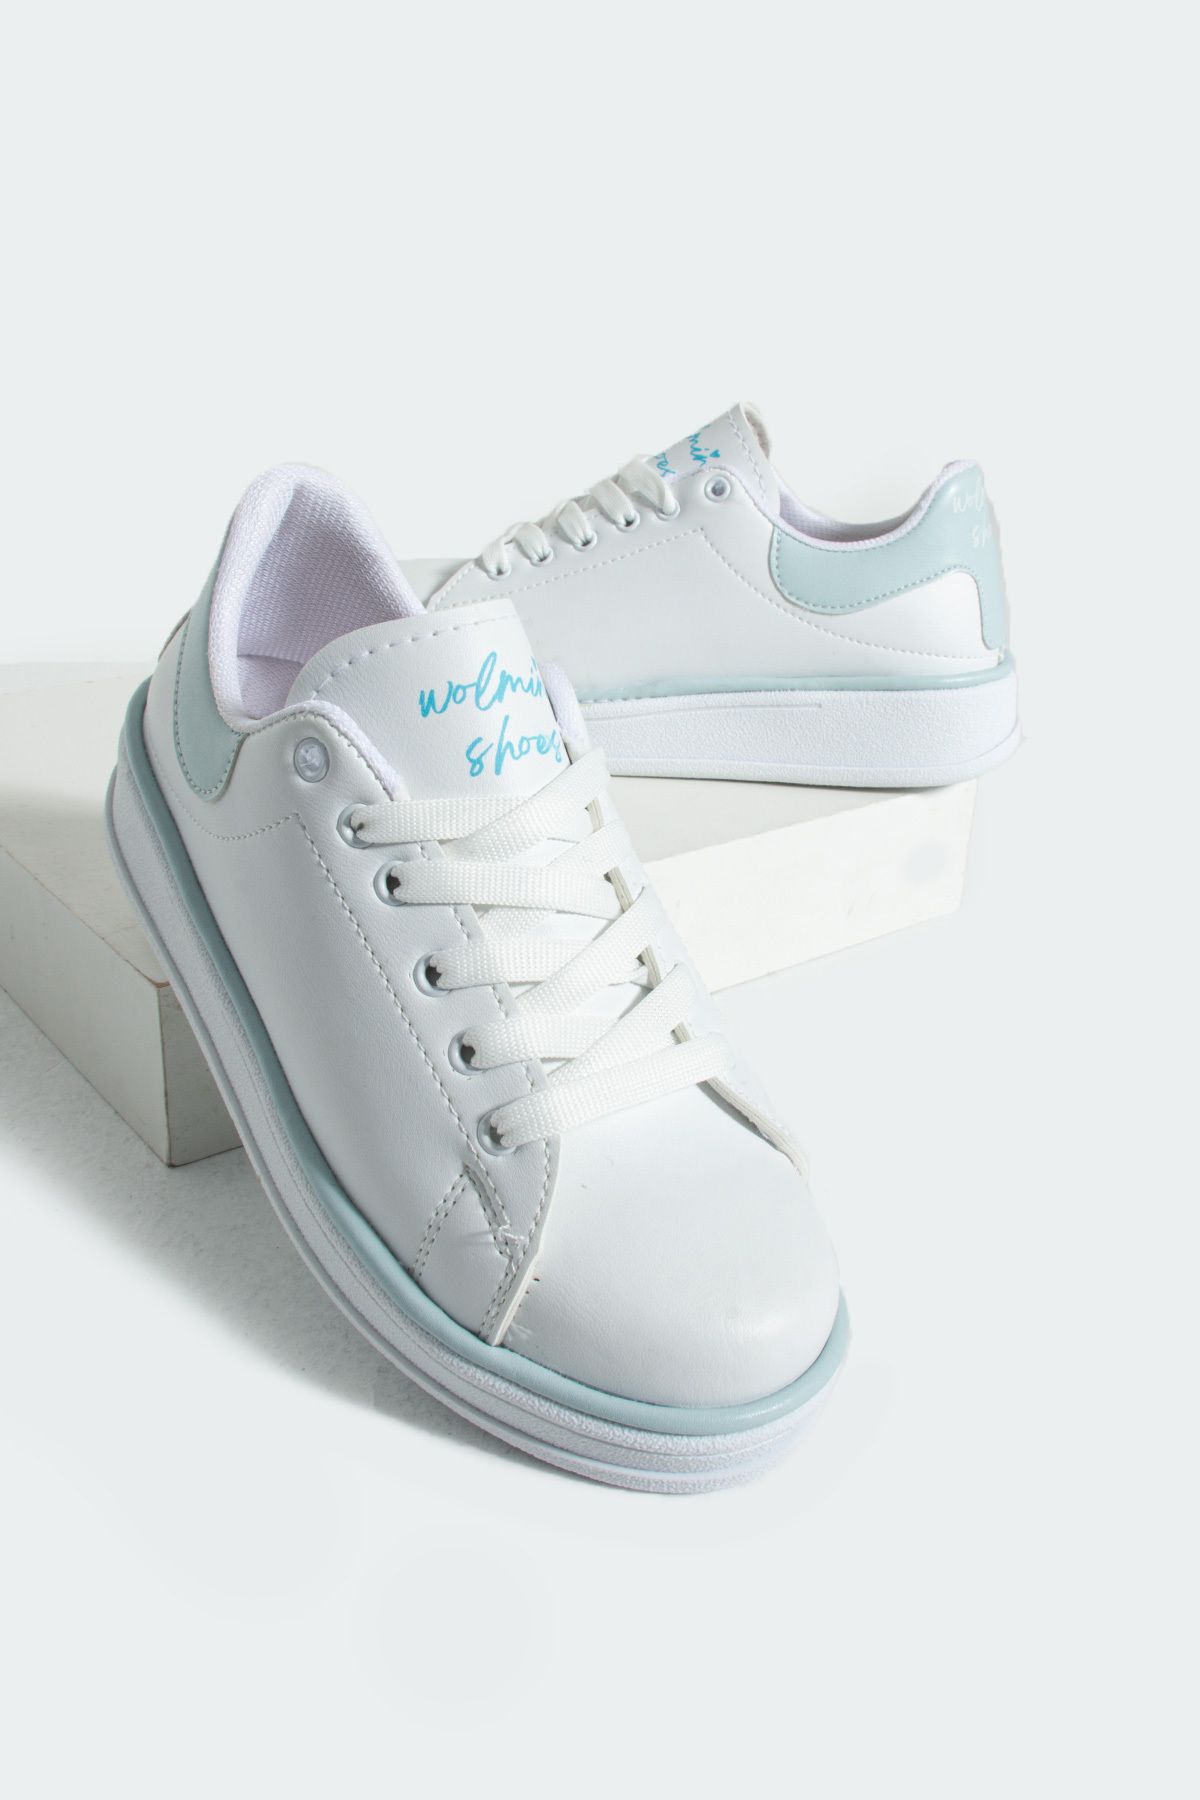 Pembe Potin Beyaz Mavi Kadın Spor Sneaker Bağcıklı Günlük Rahat Taban Ayakkabı